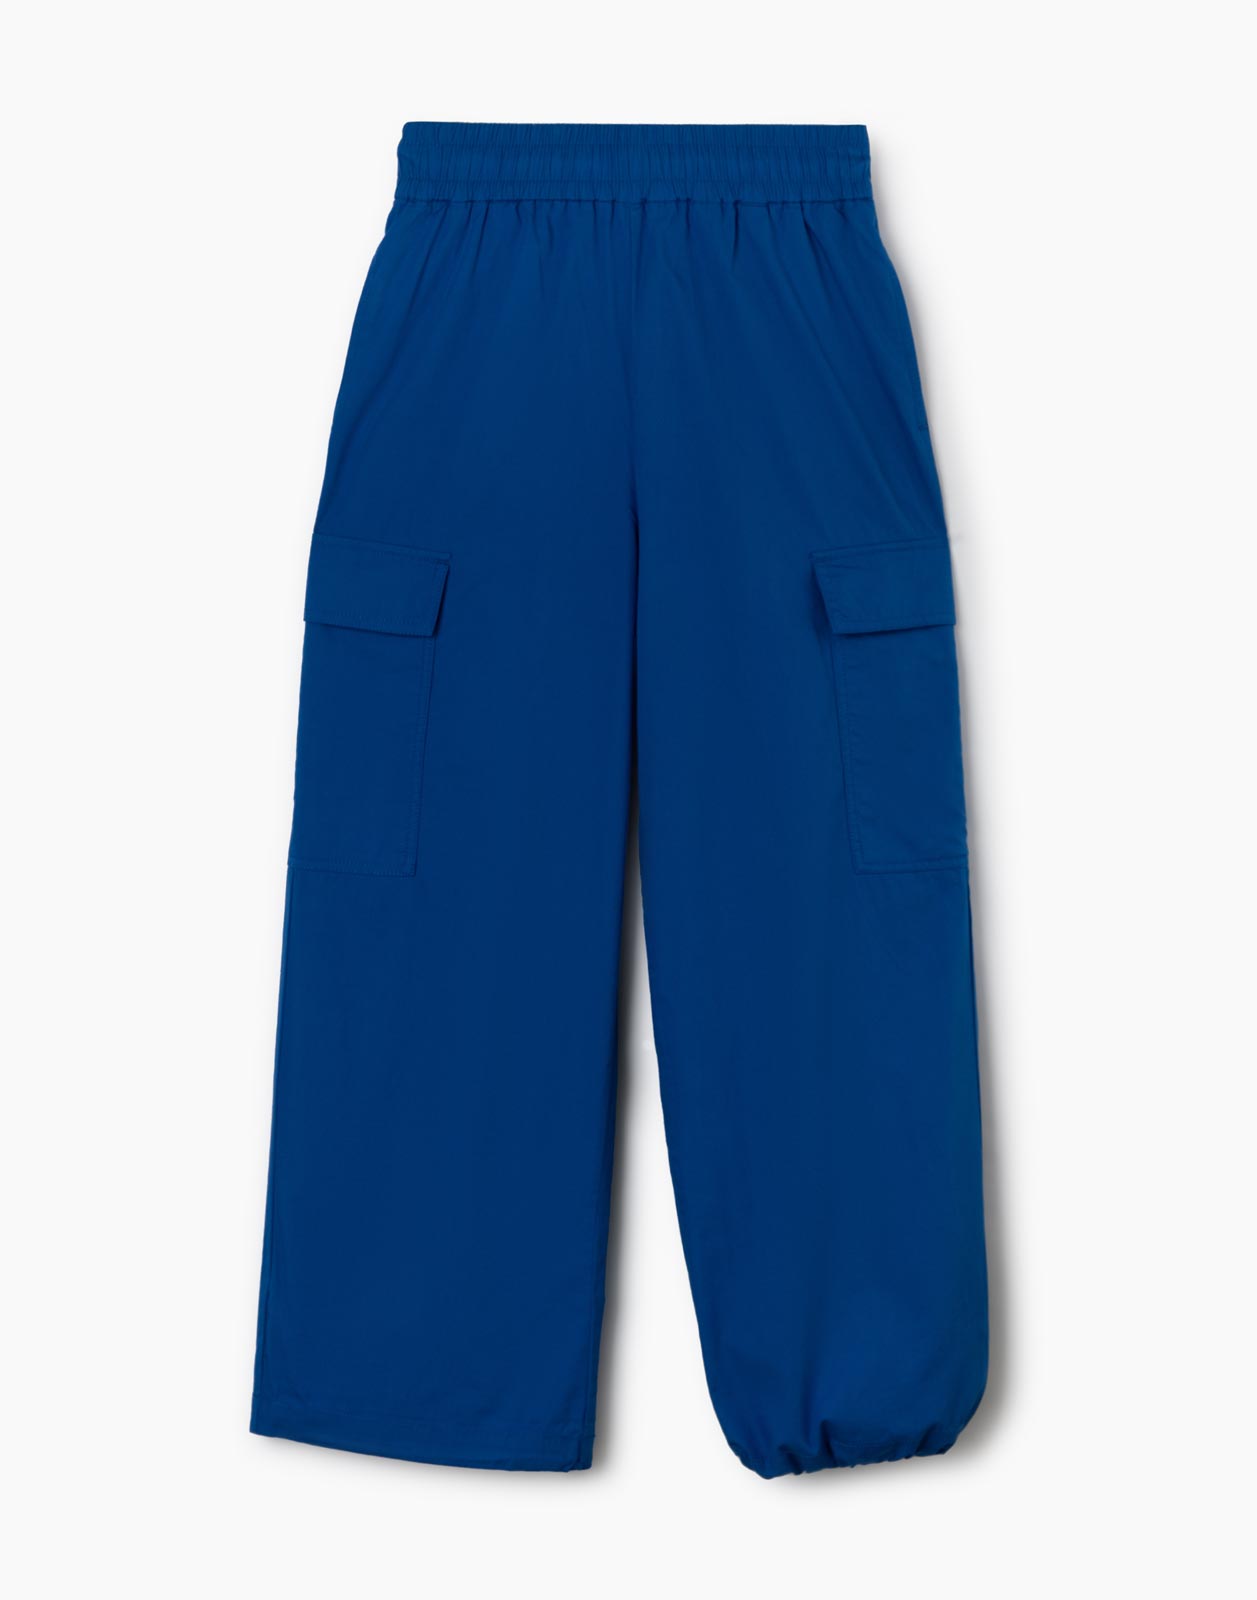 Синие брюки-трансформеры с карманами карго для девочки р.134